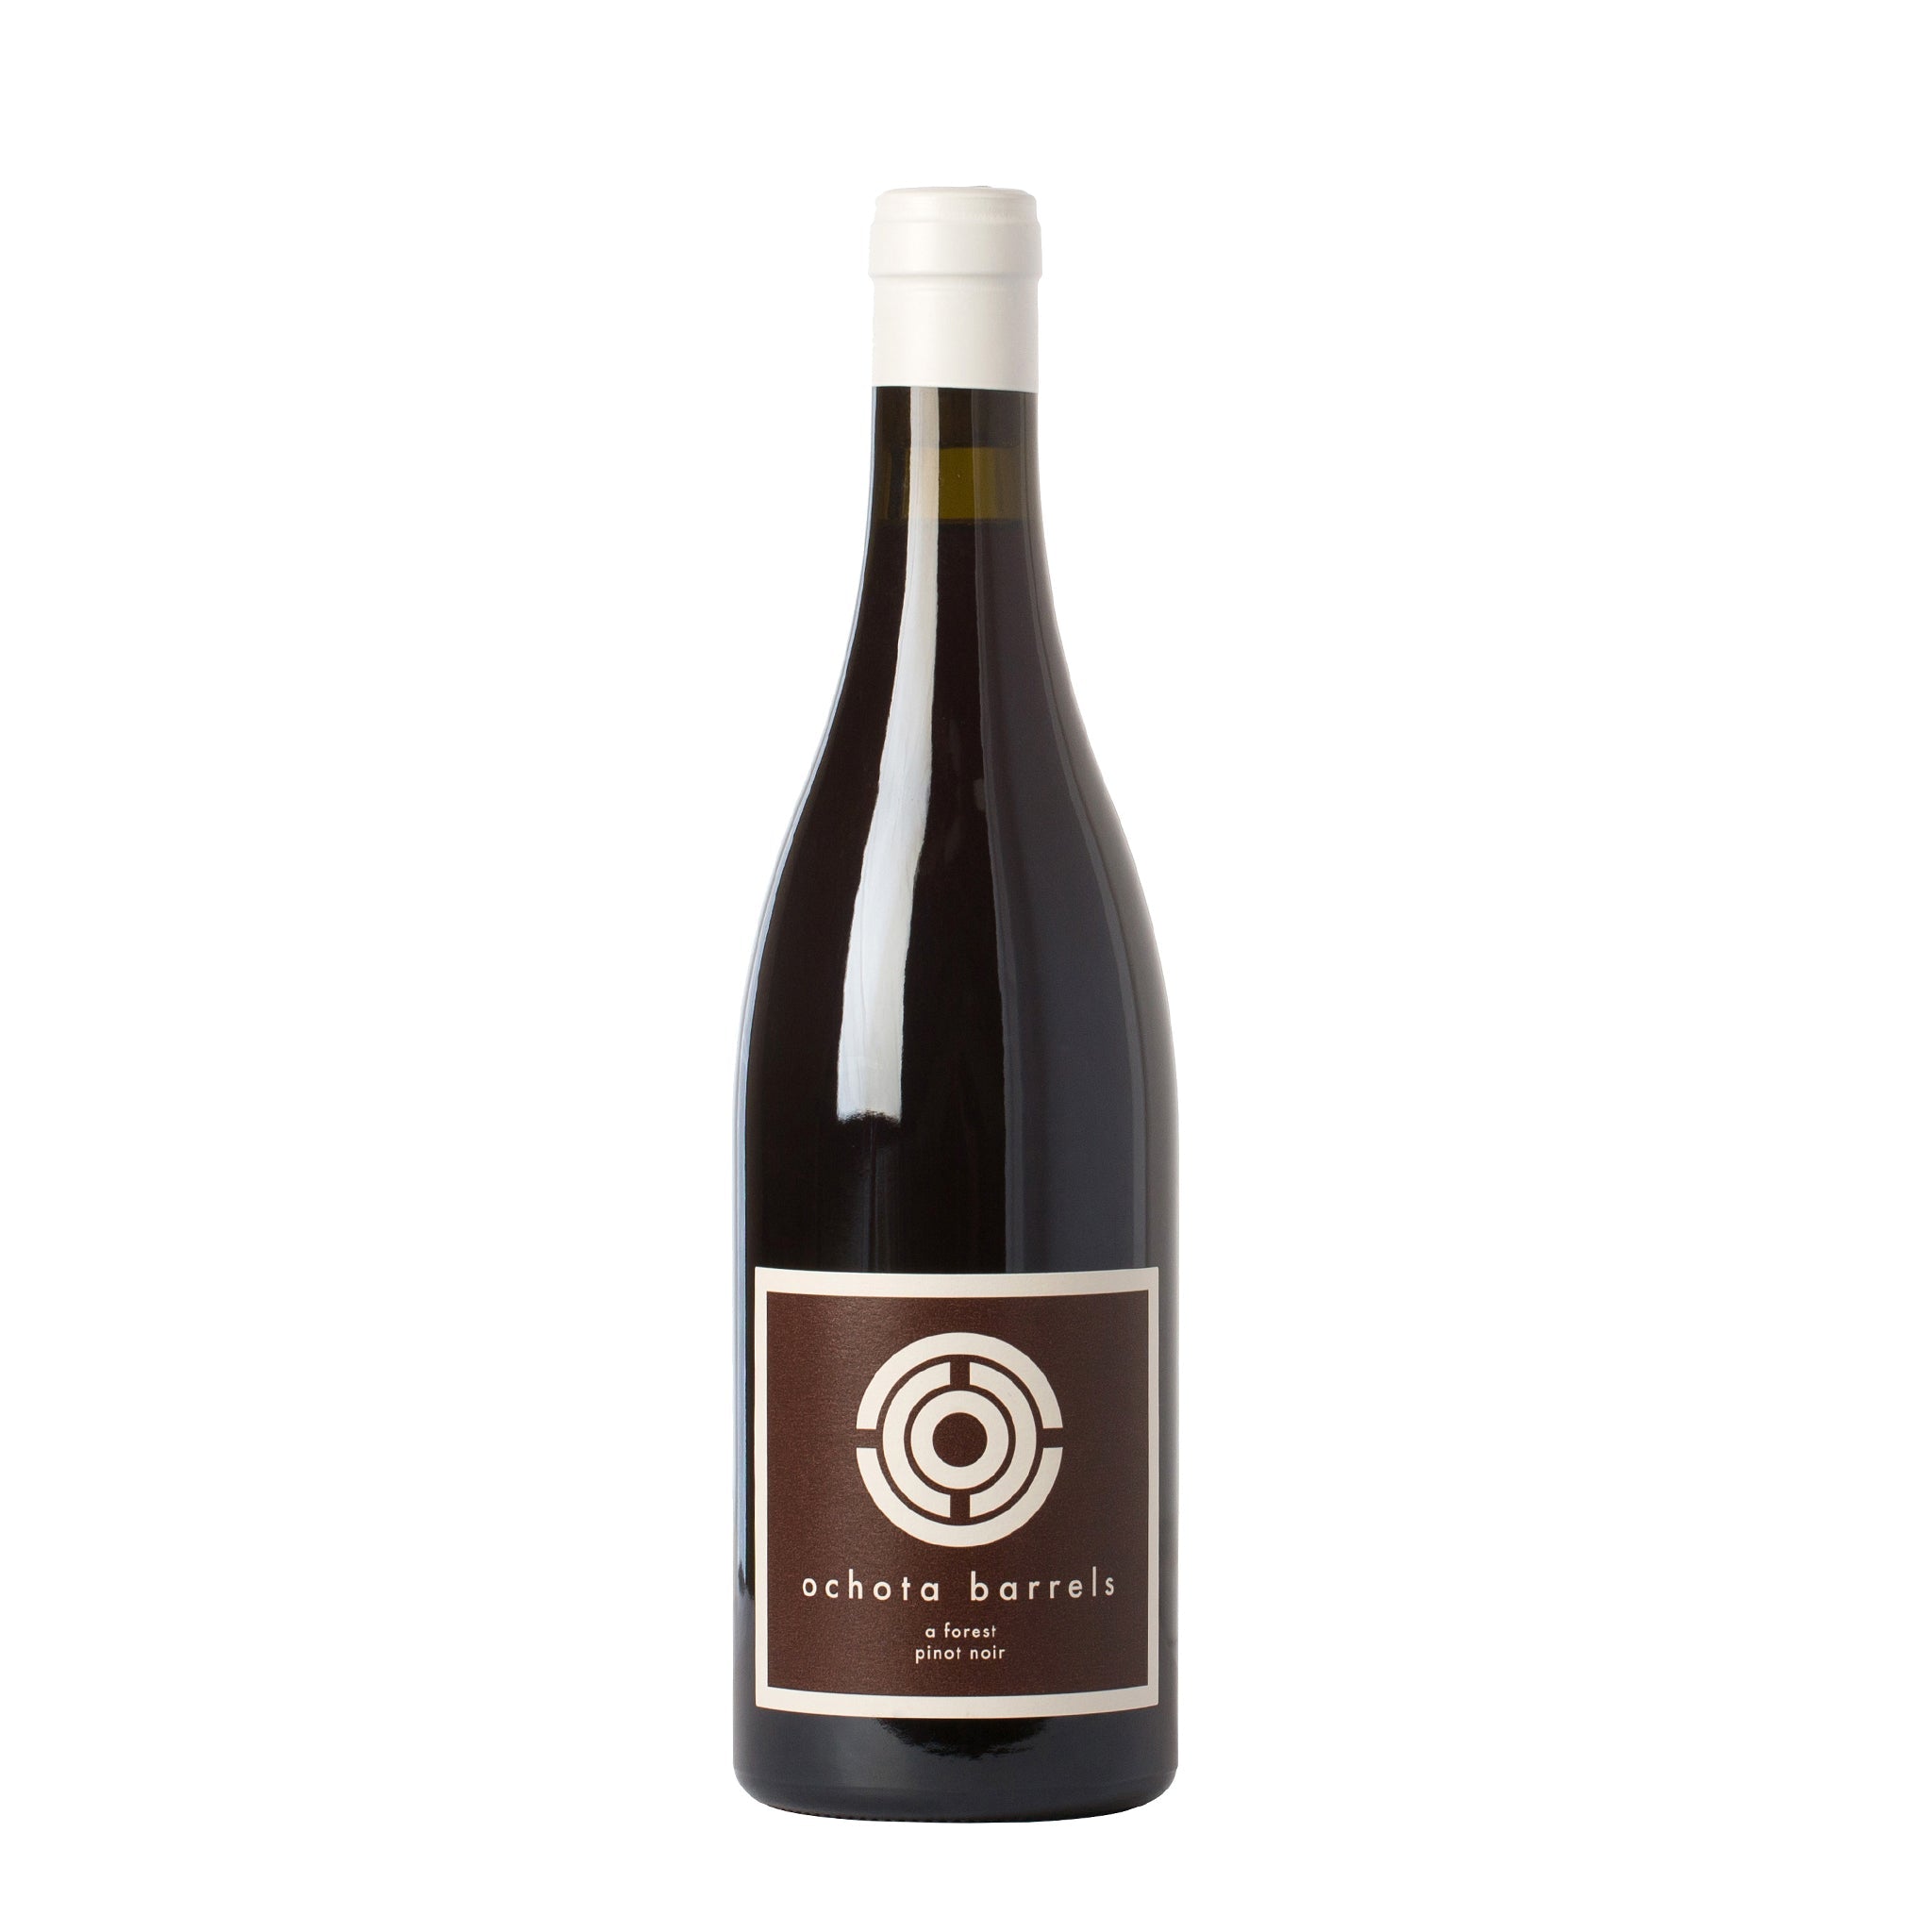 Ochota Barrels A Forest Pinot Noir 2021 750ml